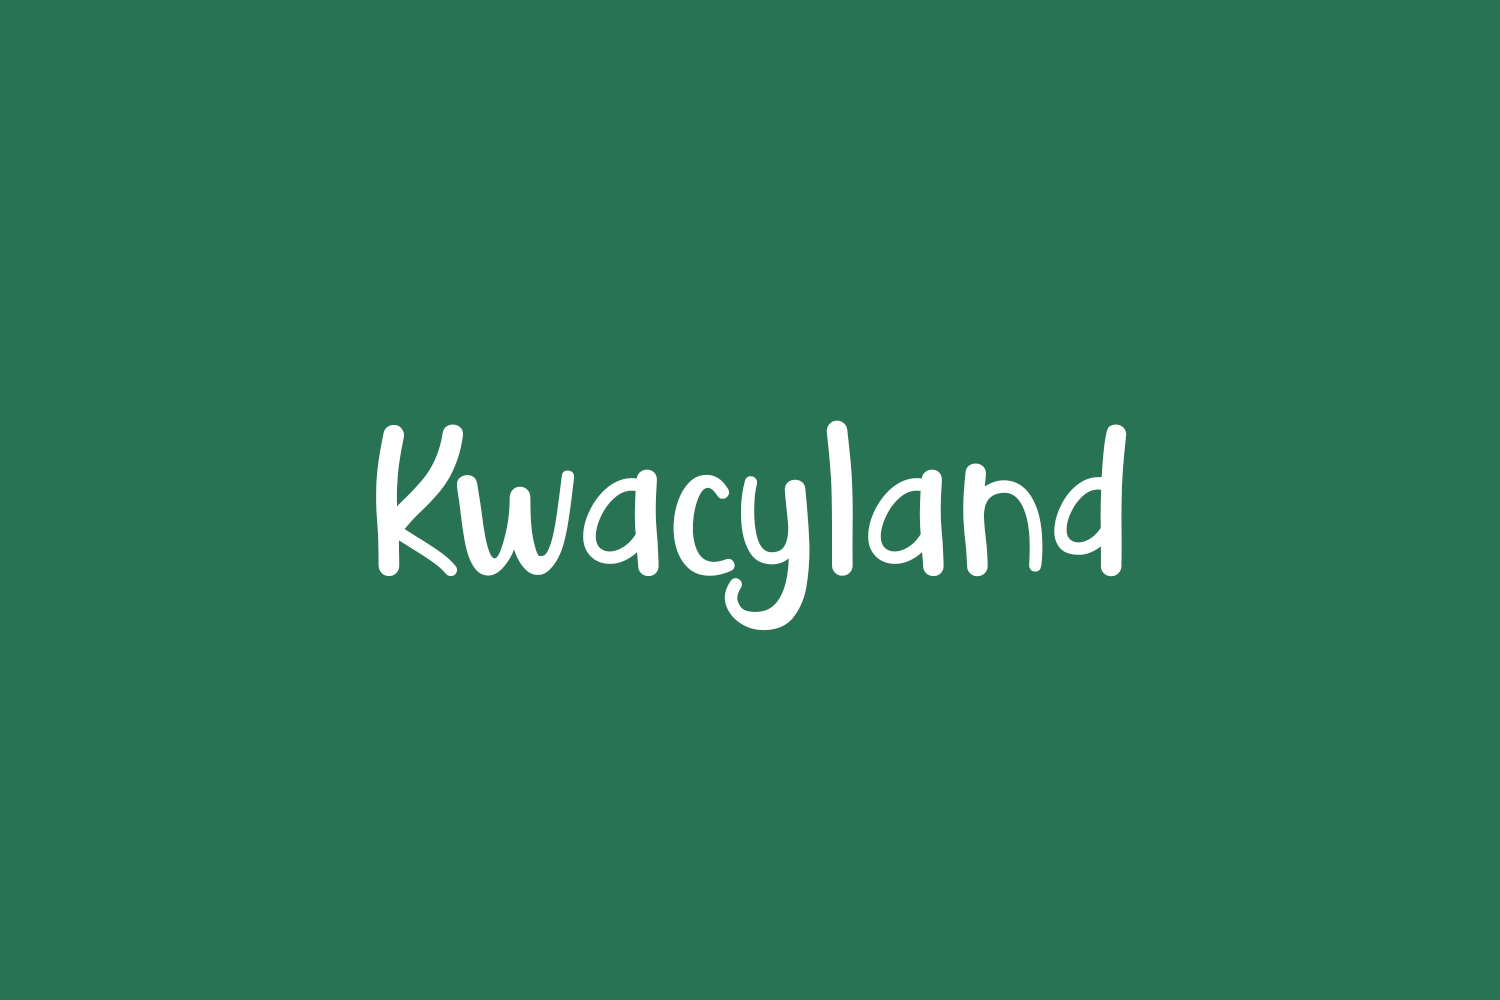 Kwacyland Free Font